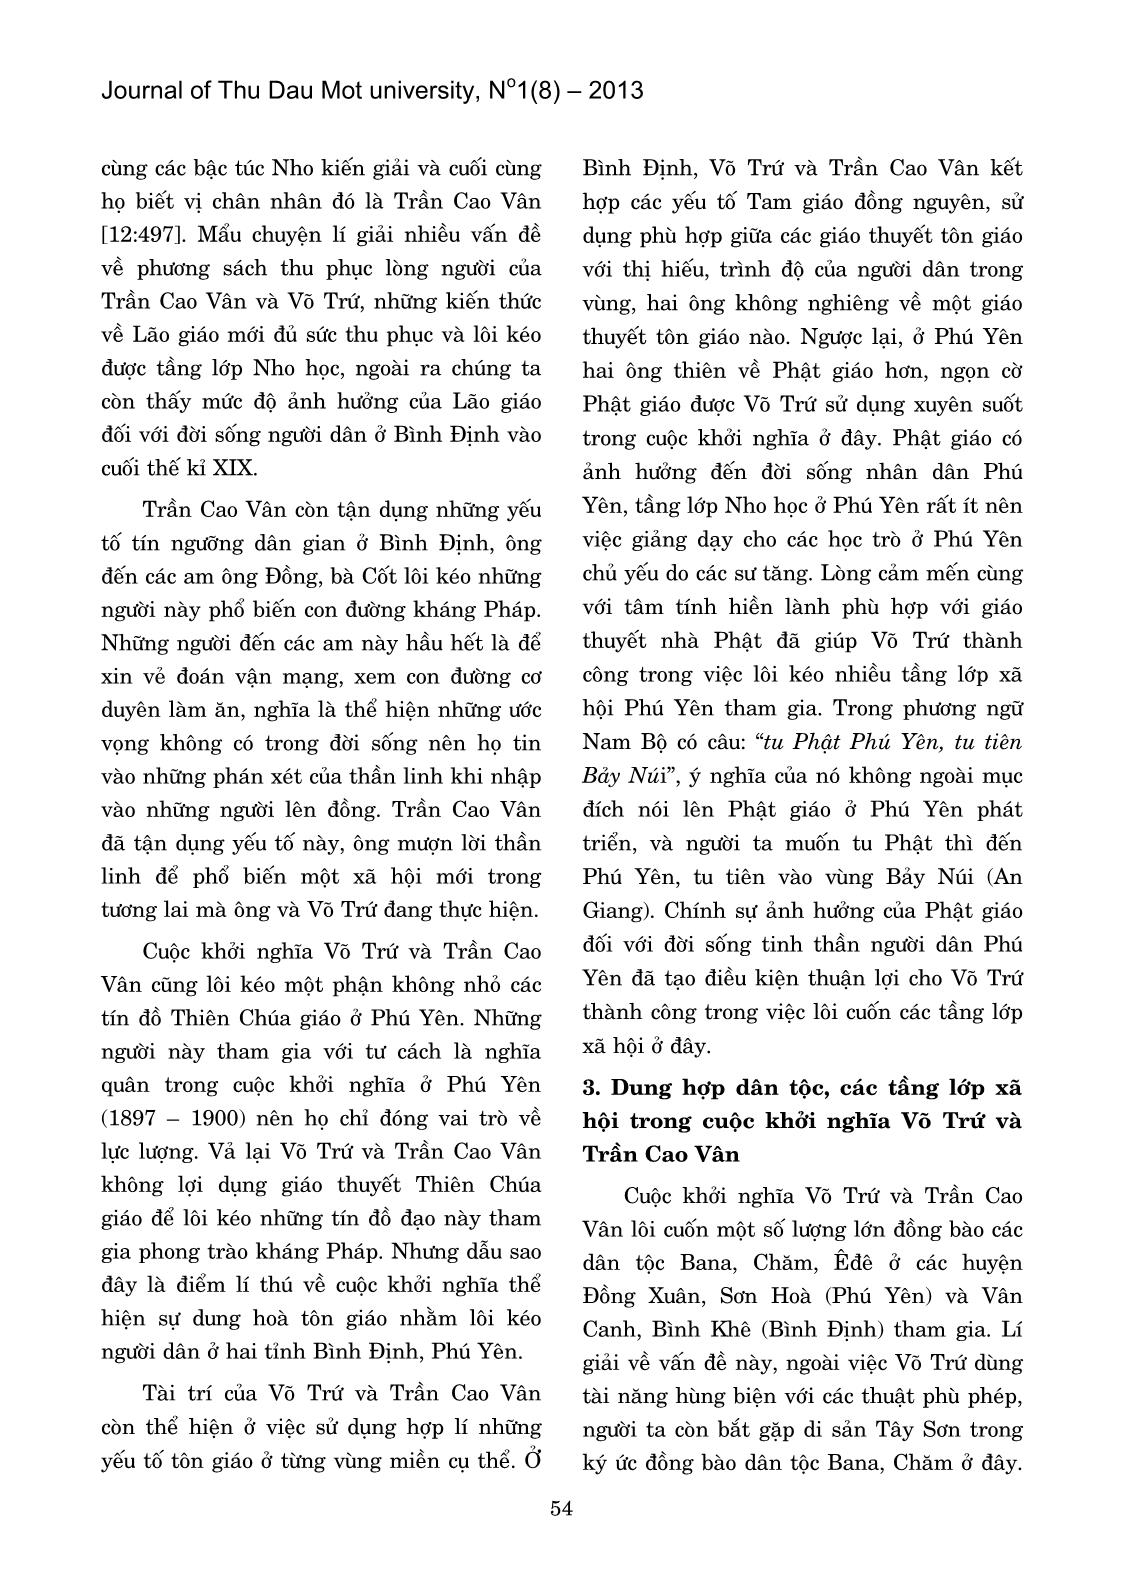 Dung hợp dân tộc, tôn giáo trong cuộc khởi nghĩa Võ Trứ và Trần Cao Vân những năm cuối thế kỉ XIX trang 4